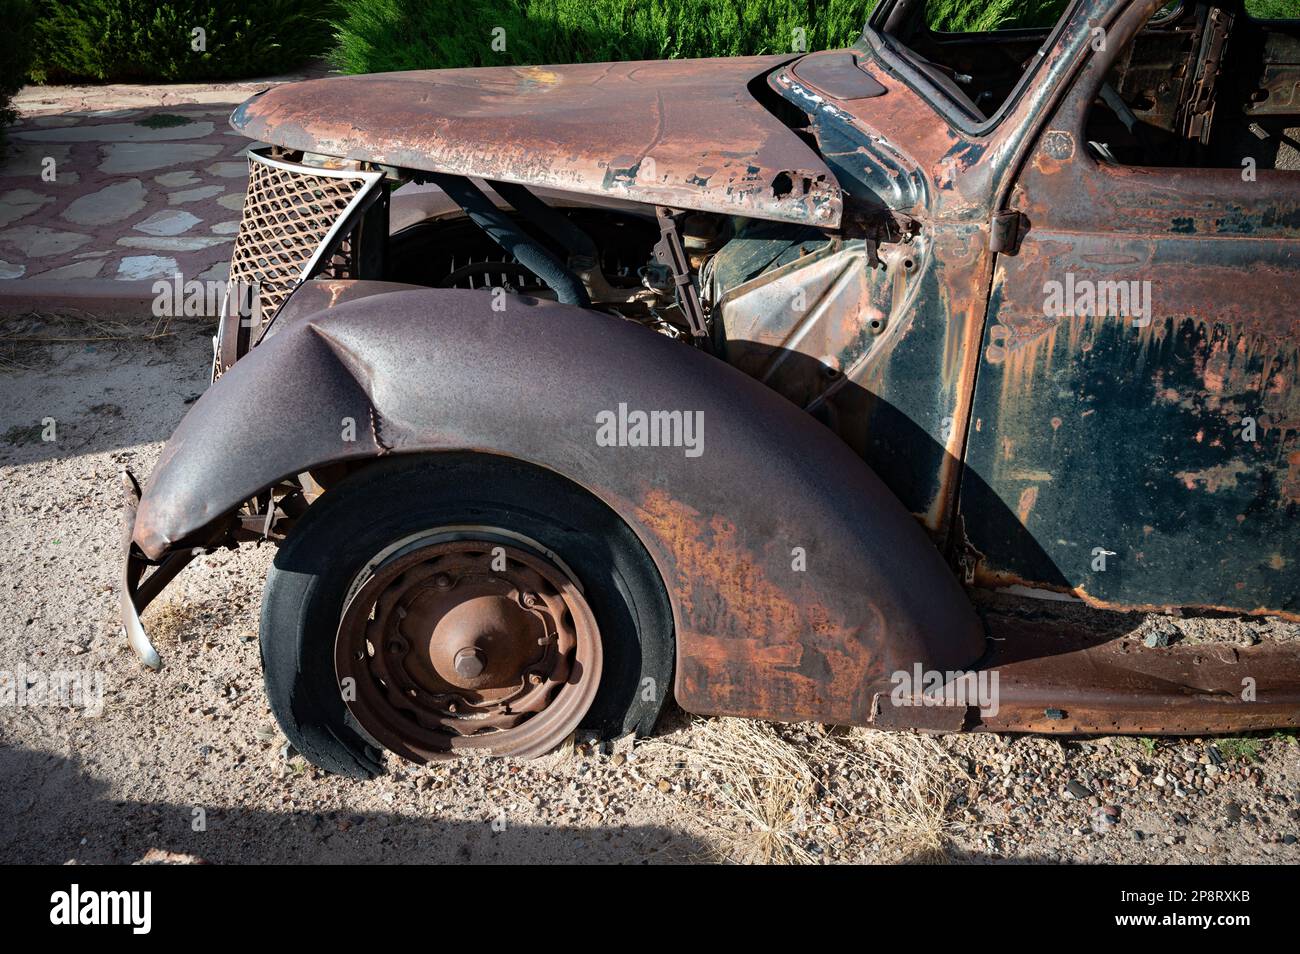 Ein altes, verrostetes Auto auf einem Kiesparkplatz, sein Lack verblasste  und Rost sammelte sich auf der Metallkarosserie Stockfotografie - Alamy